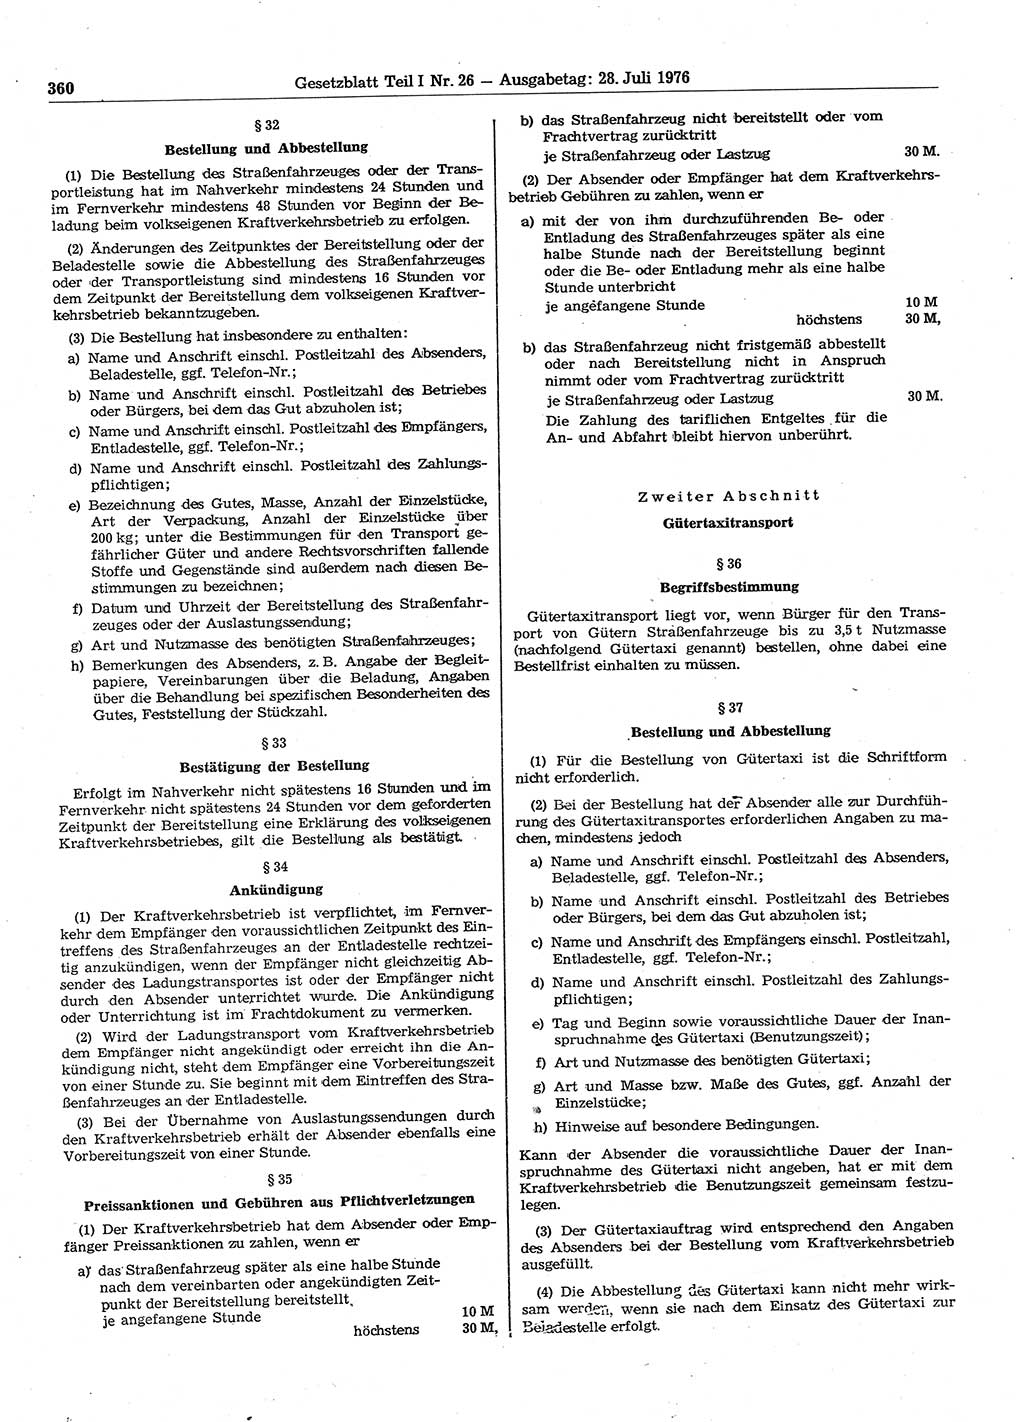 Gesetzblatt (GBl.) der Deutschen Demokratischen Republik (DDR) Teil Ⅰ 1976, Seite 360 (GBl. DDR Ⅰ 1976, S. 360)